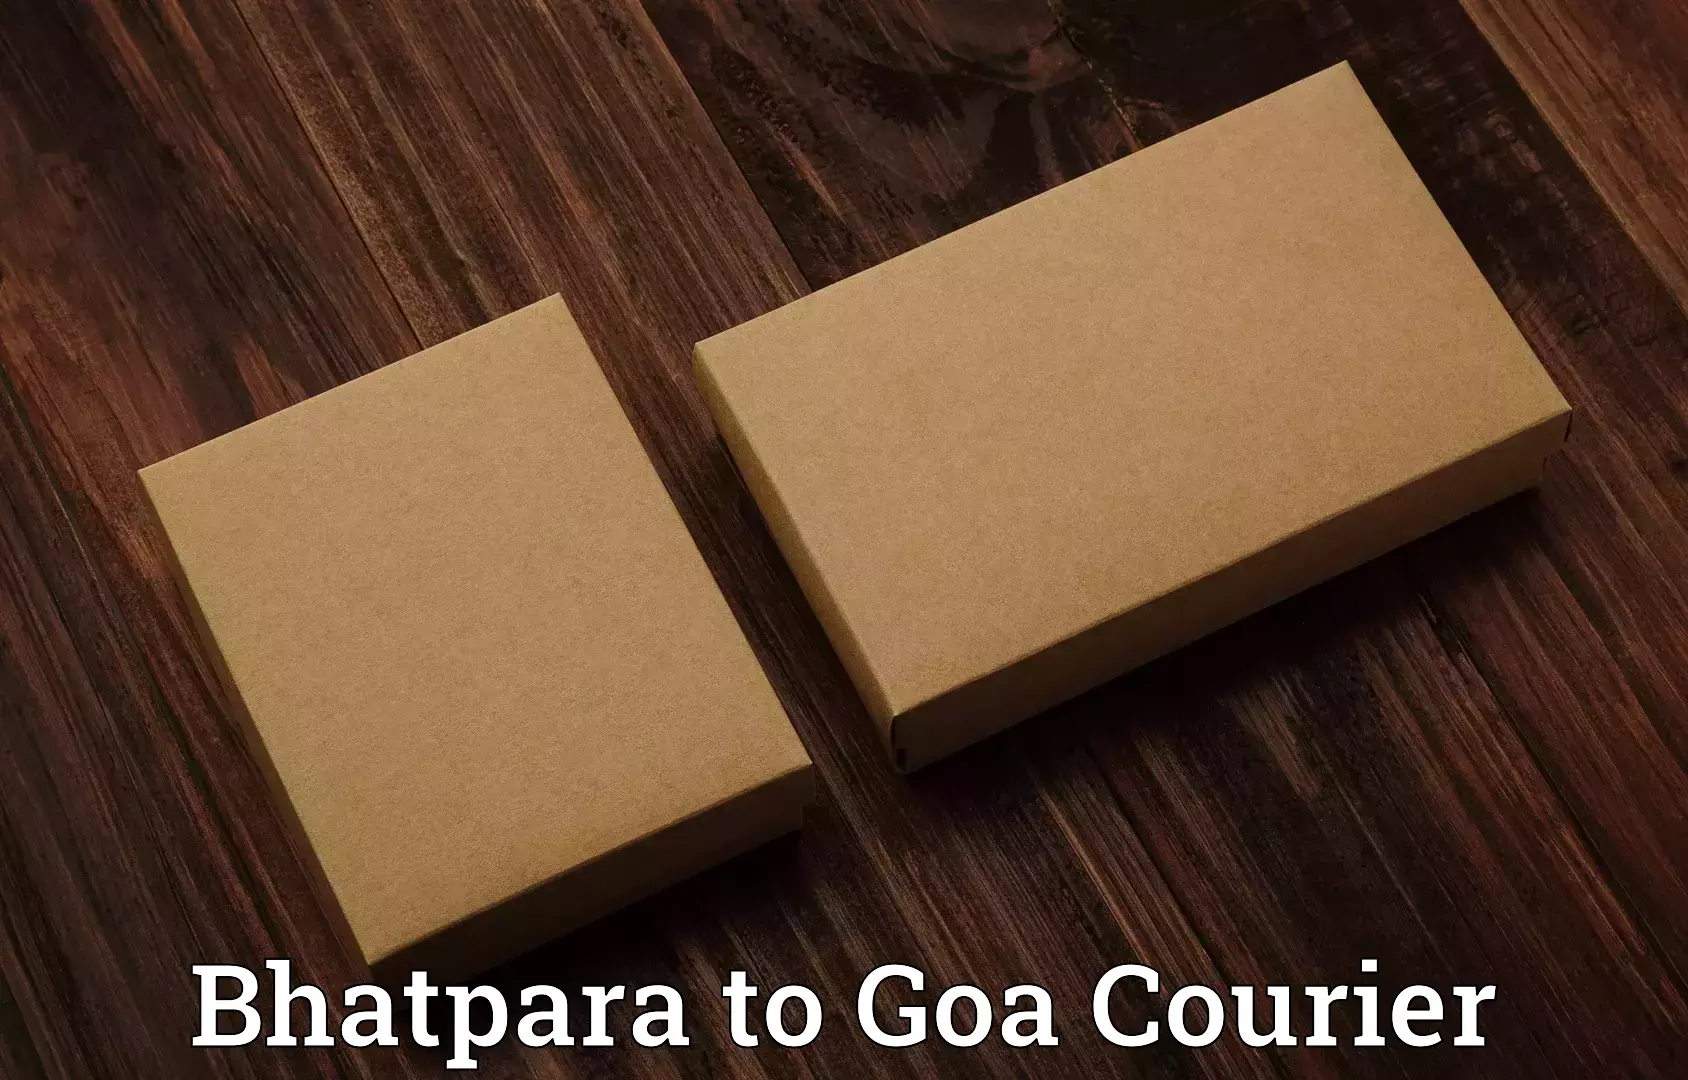 Luggage transport solutions Bhatpara to Panaji